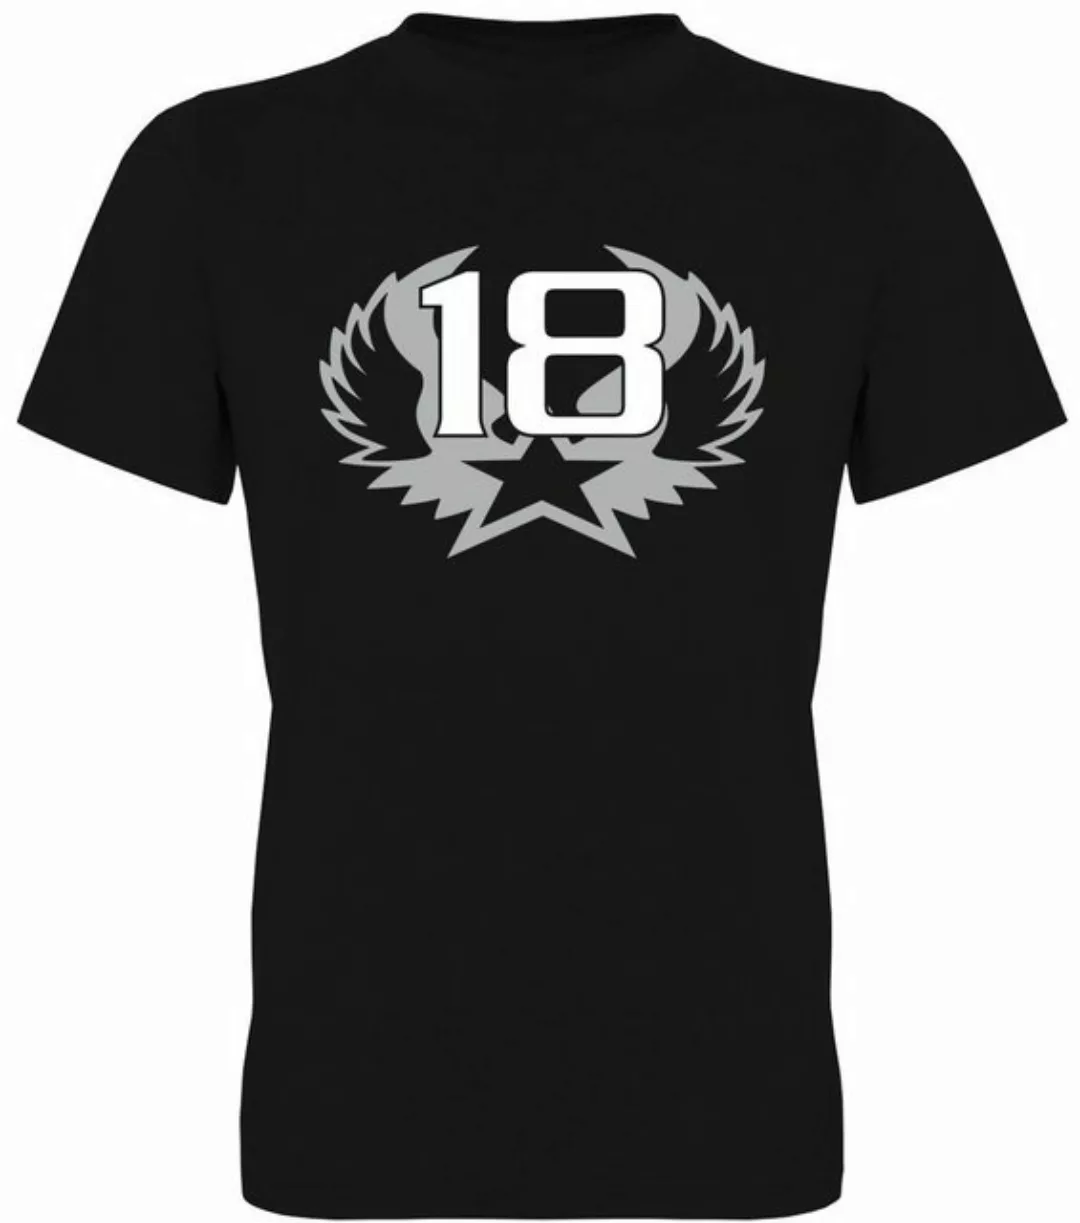 G-graphics T-Shirt 18 – Stern mit Flügeln Herren T-Shirt, zum 18ten Geburts günstig online kaufen